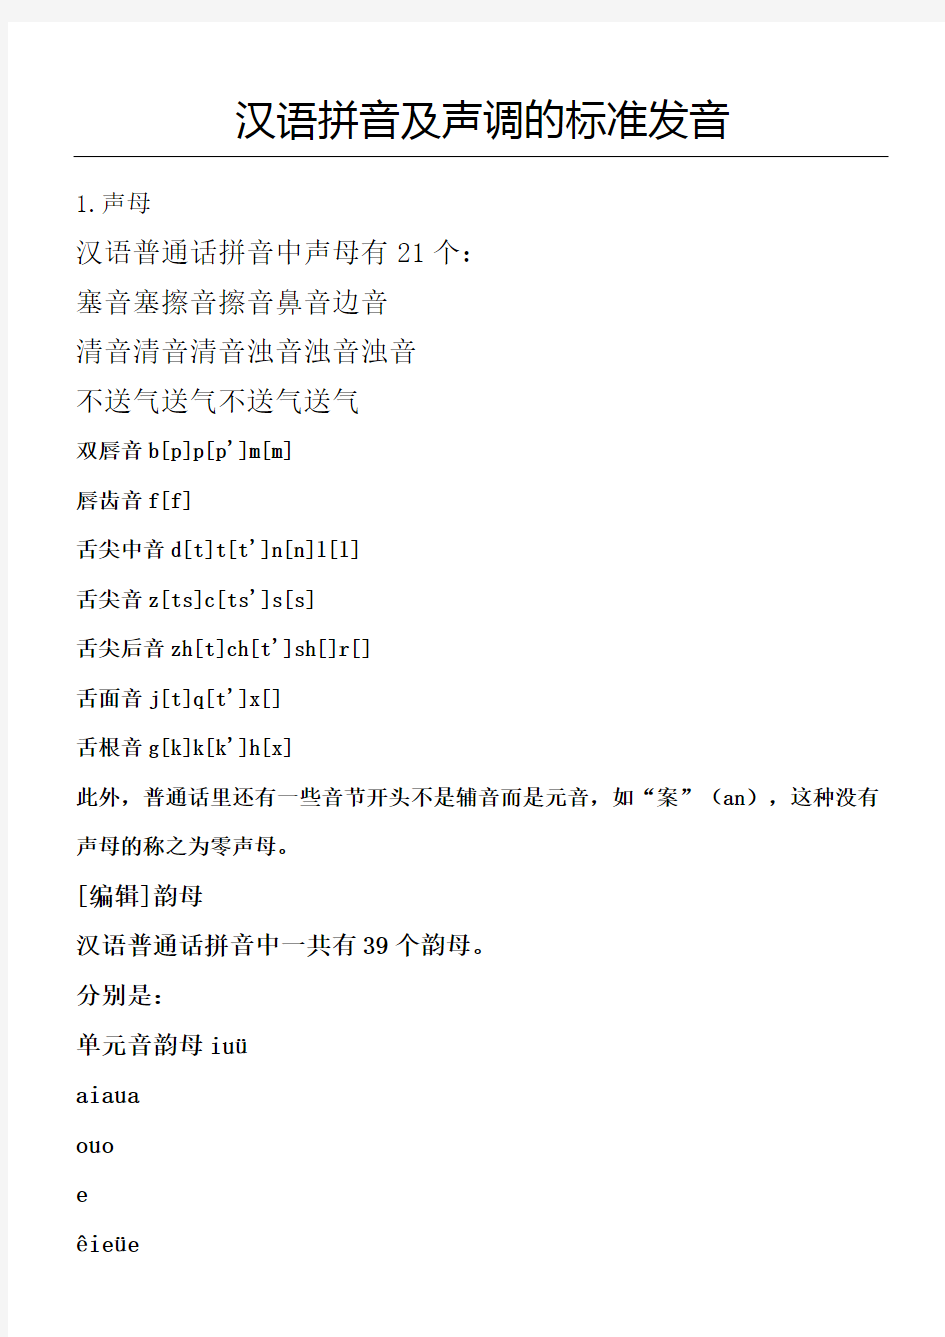 汉语拼音及声调的标准发音完整版